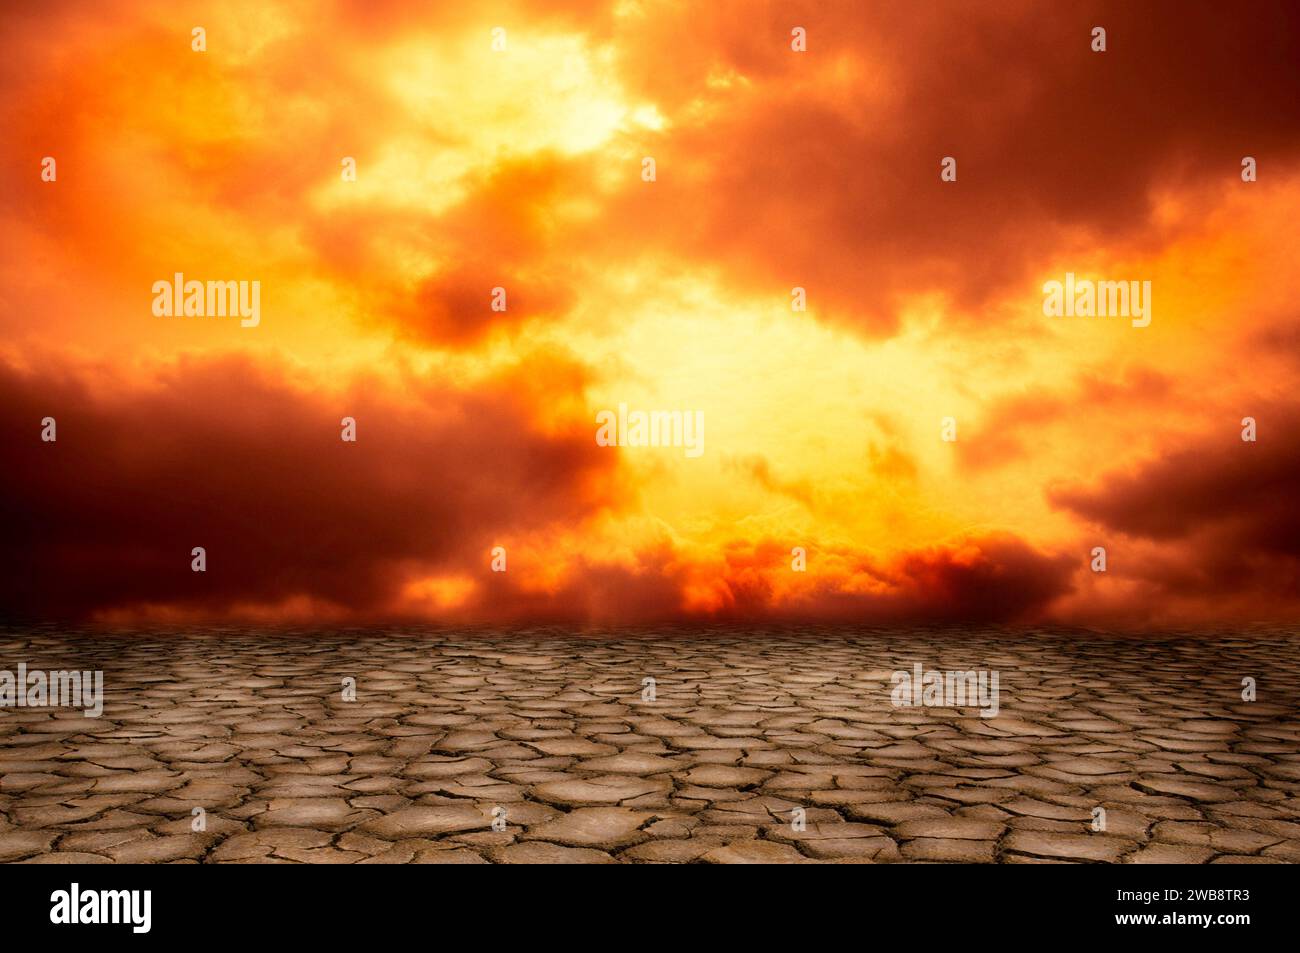 ciel rouge dramatique et paysage de sécheresse, concept de réchauffement climatique Banque D'Images